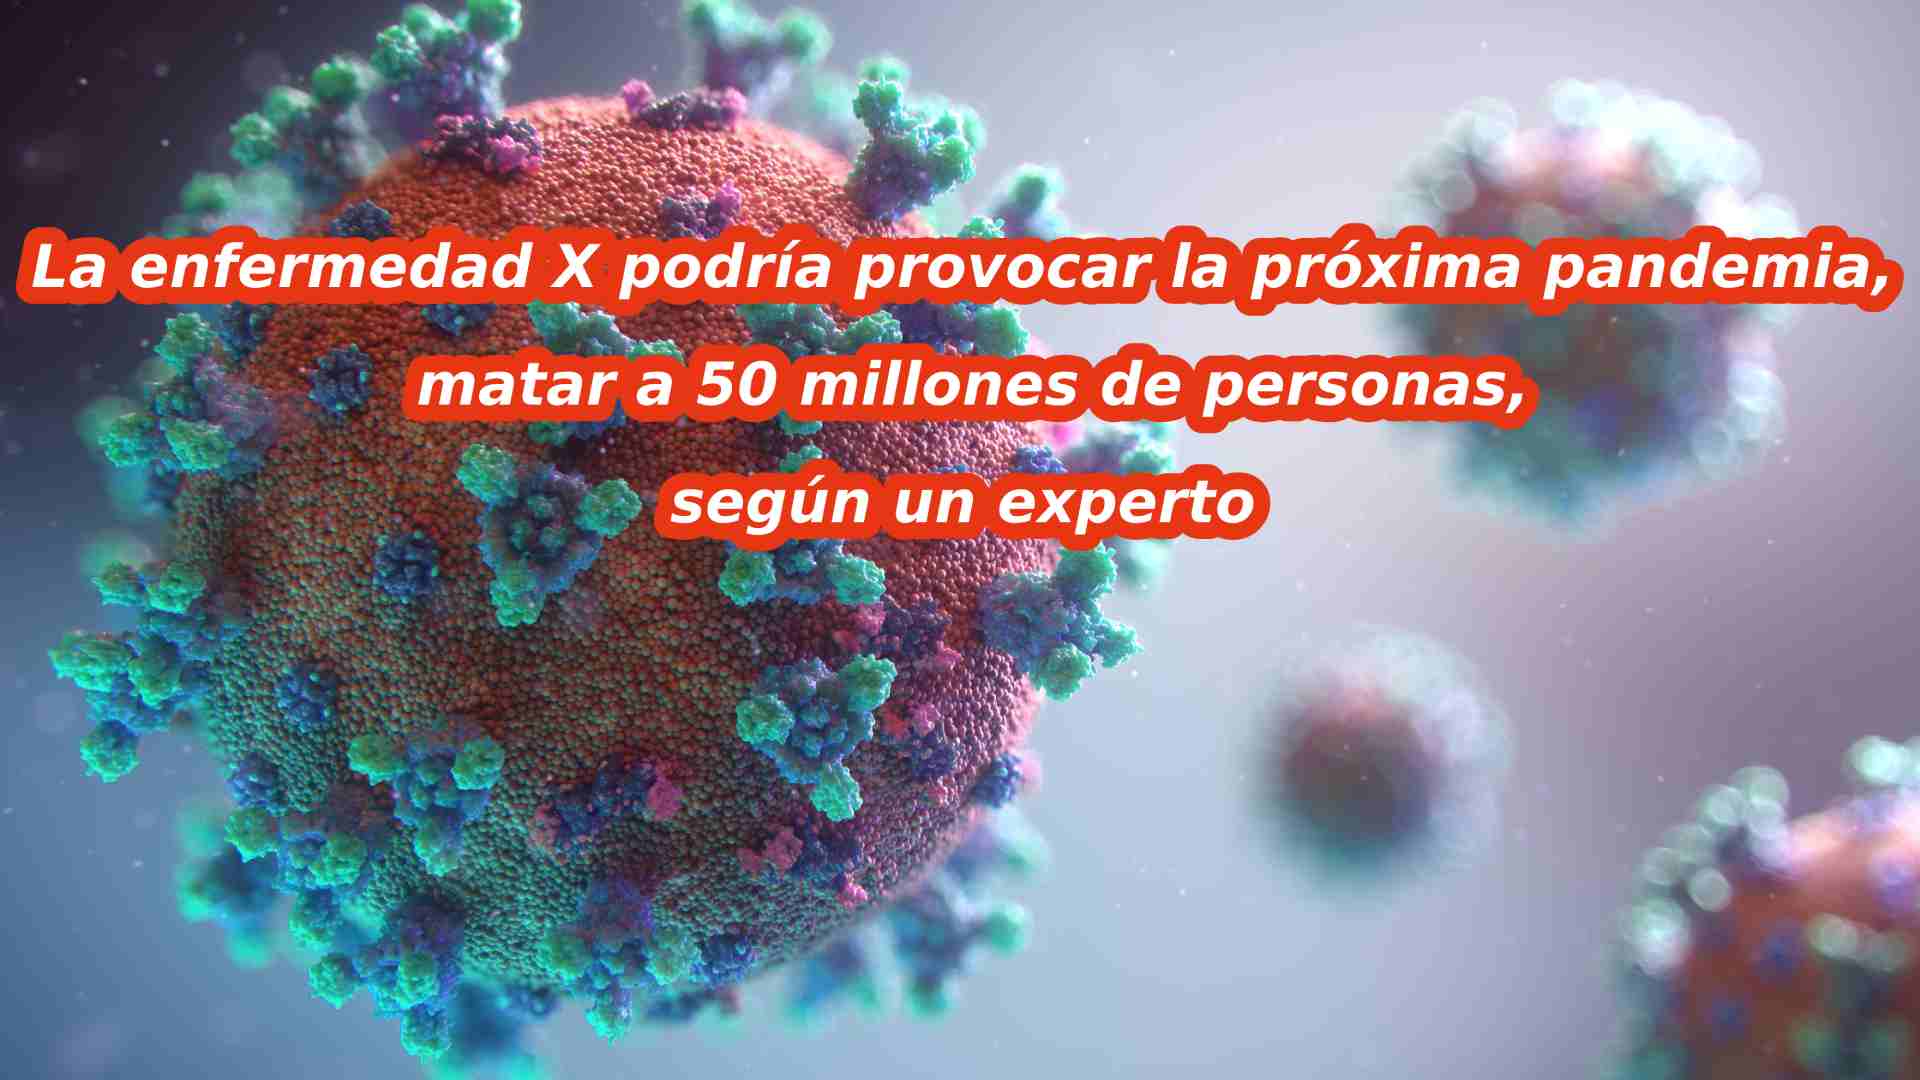 Explorando la "Enfermedad X": la amenaza silenciosa que podría causar la próxima pandemia. Los expertos advierten de que podría causar 50 millones de muertos. ¿Estamos preparados?